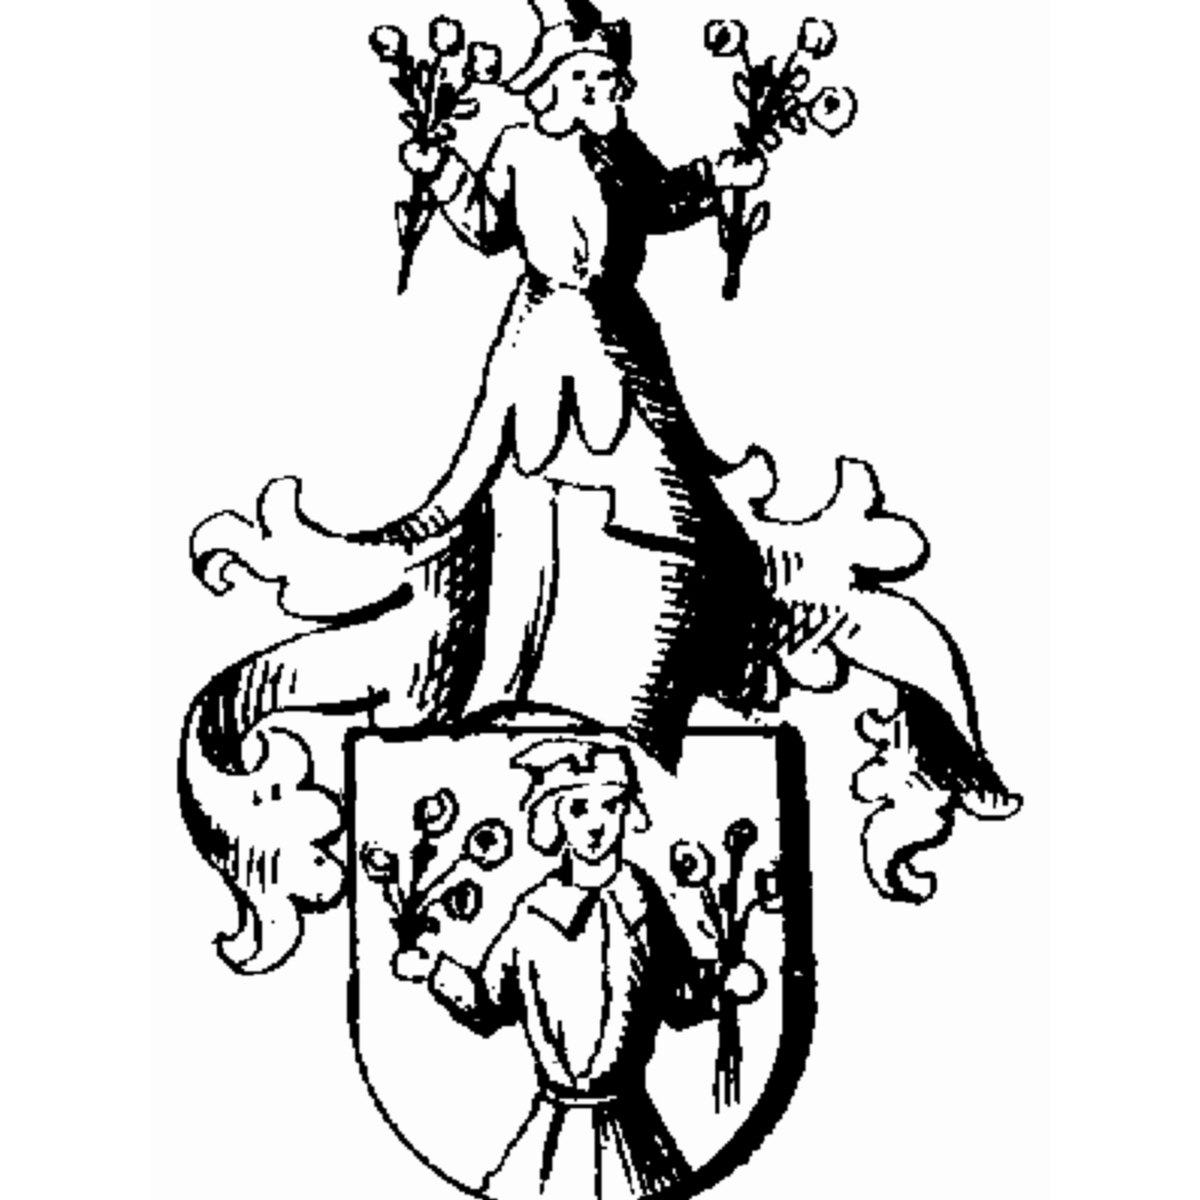 Wappen der Familie Arnaud